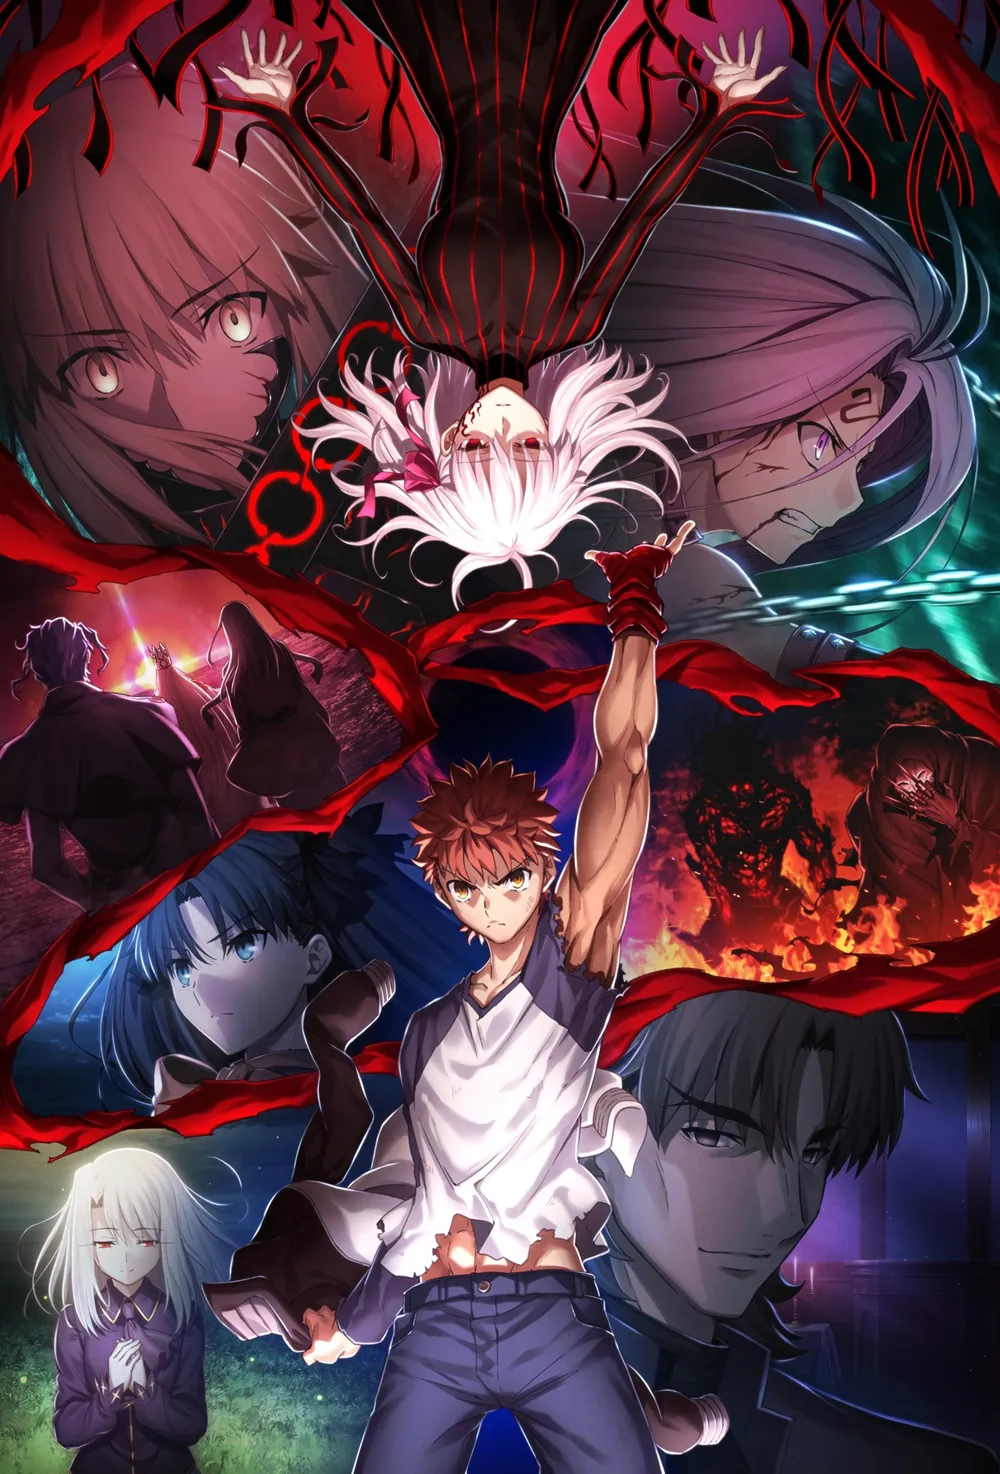 劇場版「Fate/stay night」第三章キービジュアル、衛宮と反転するセイバーが描かれている。